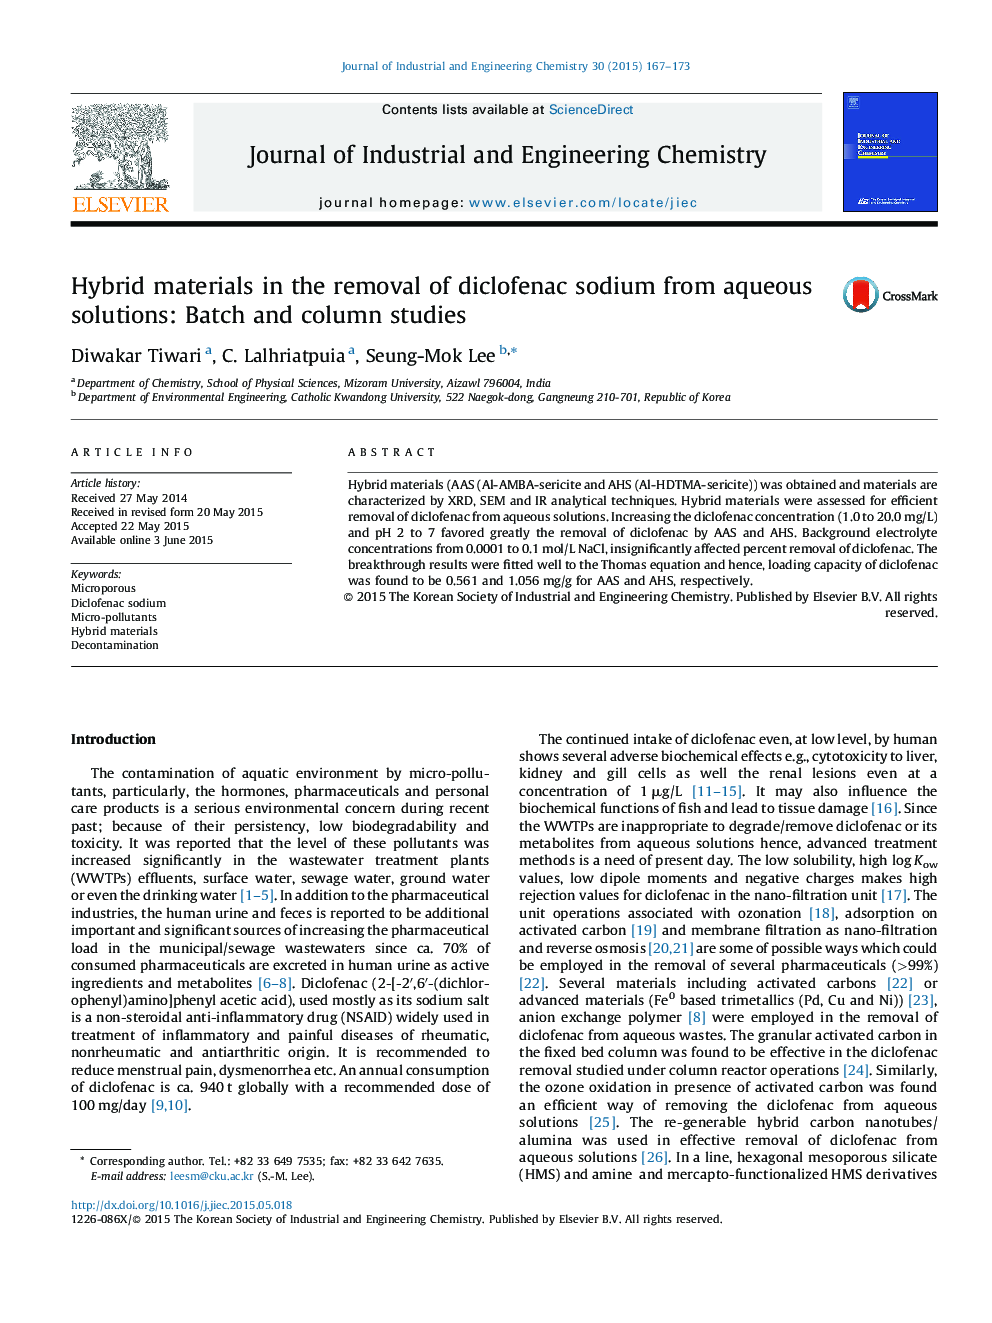 مواد ترکیبی در حذف دی کلوفناک سدیم از محلول های آبی: مطالعات دسته ای و ستون 